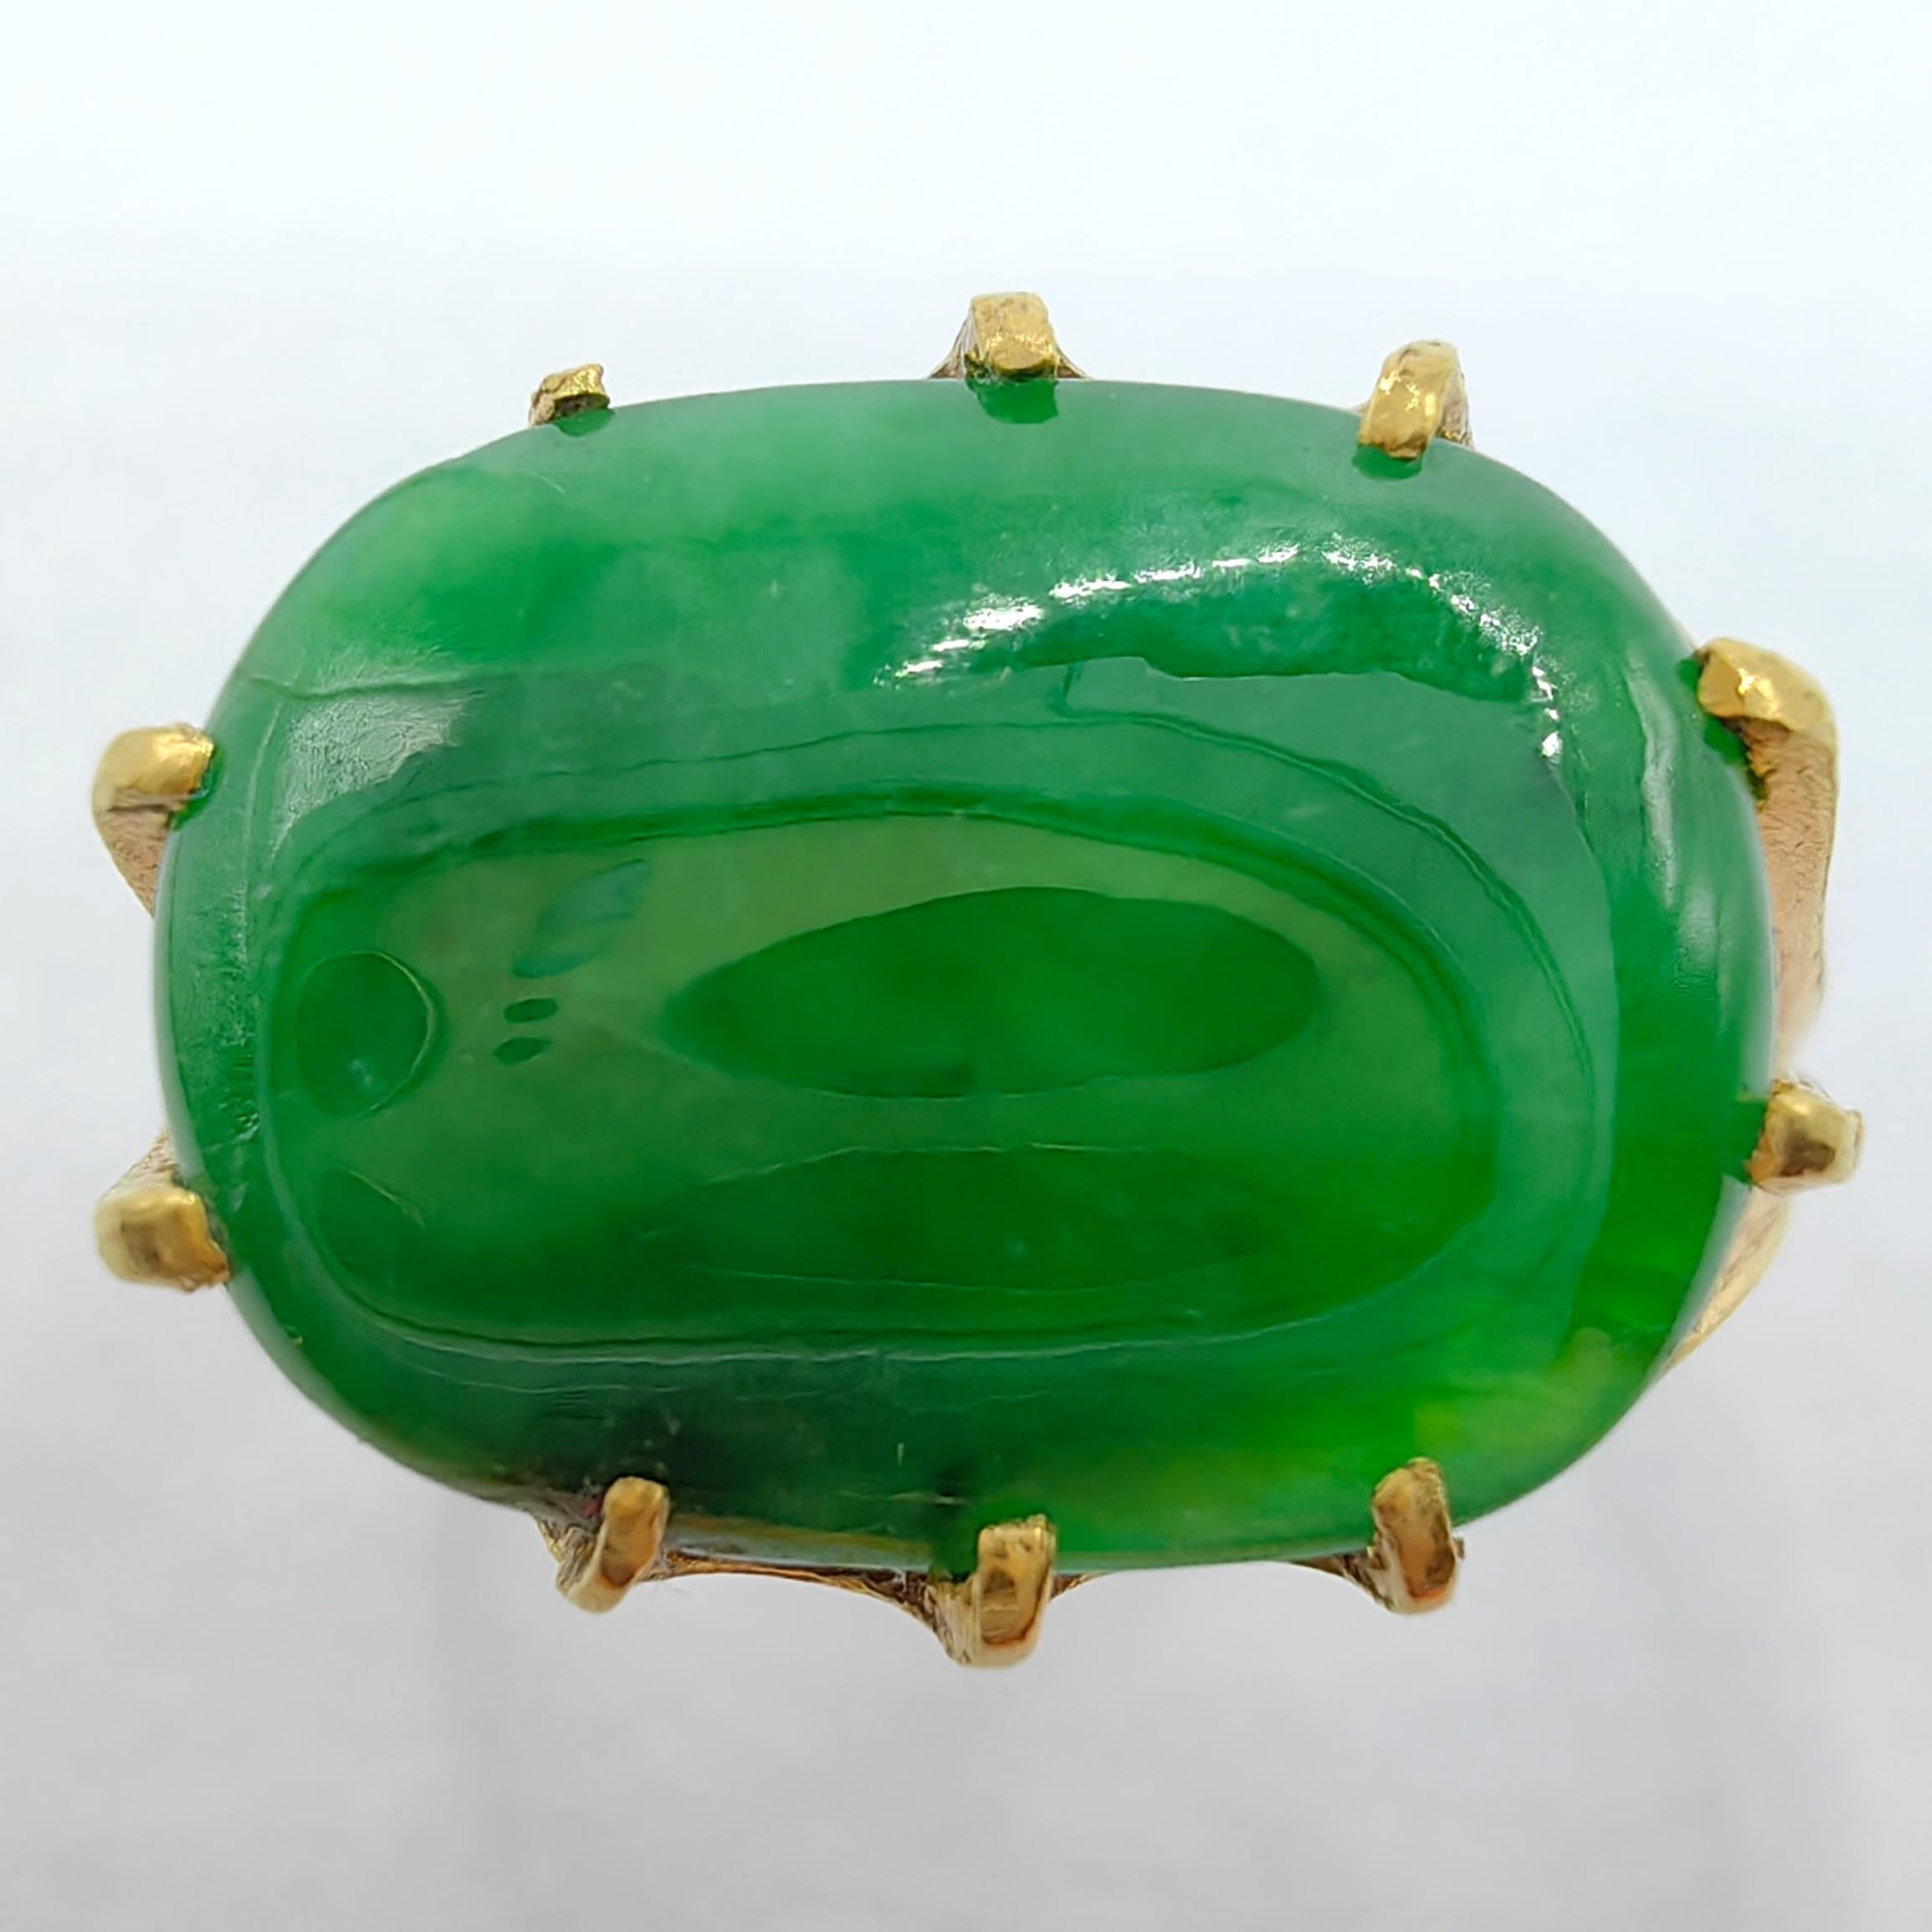 Voici notre exquise bague Pinky Finger en jade cabochon vert impérial antique en or jaune 24K, véritable témoignage de la beauté intemporelle et de l'artisanat.

Au centre de cette remarquable bague se trouve un superbe cabochon de jadéite vert